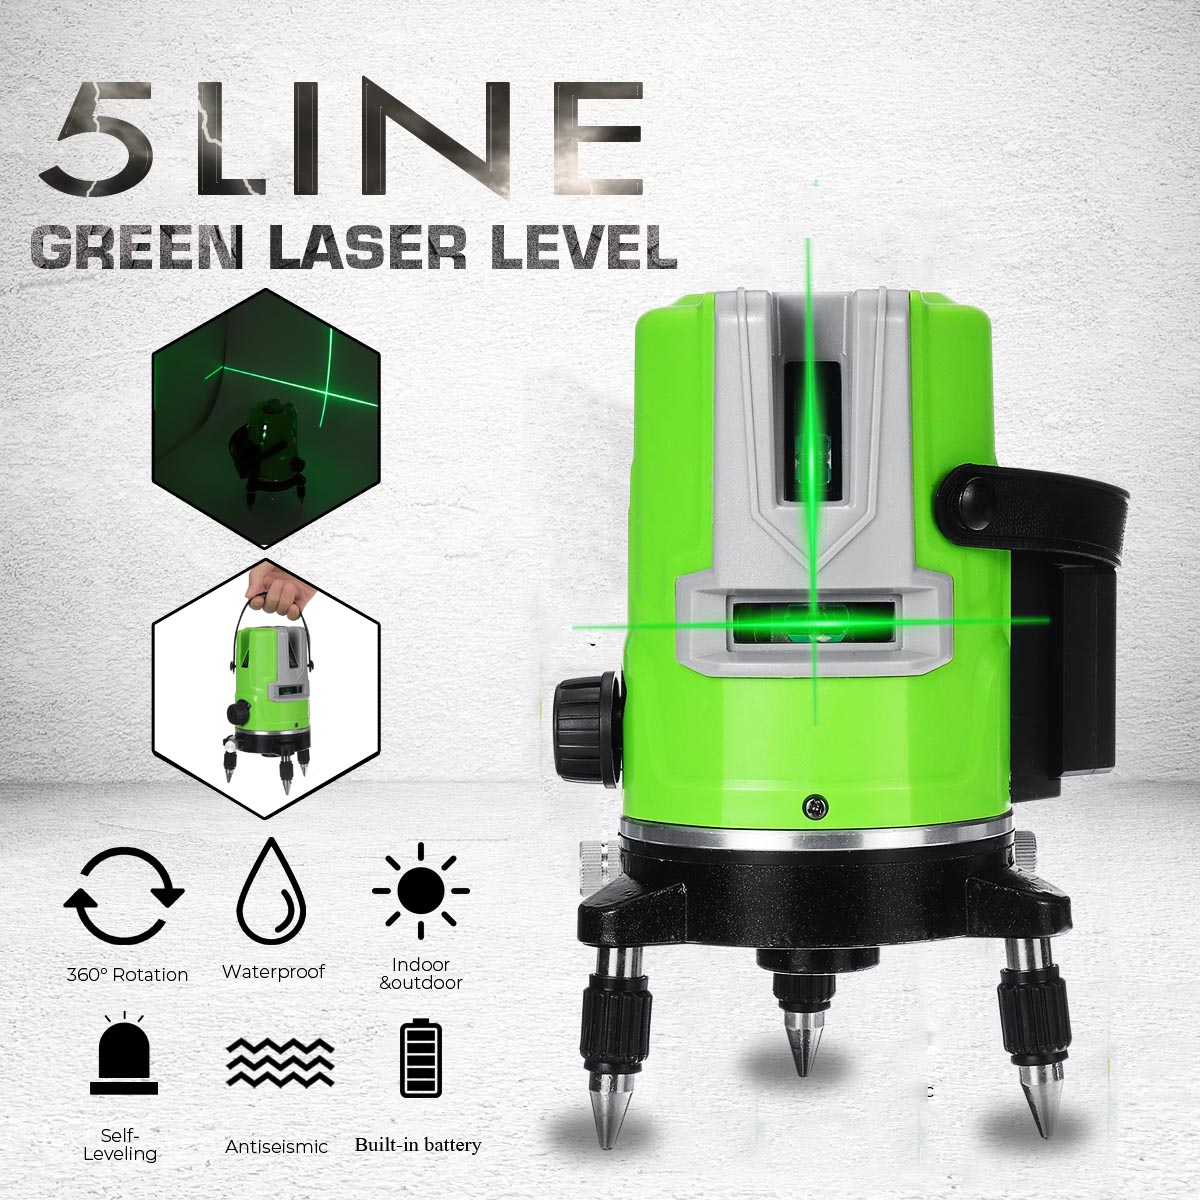 3D-5-Lines-Green-Laser-Level-Self-Leveling-360deg-Rotary-Cross-Measuring-Tool-1707097-1